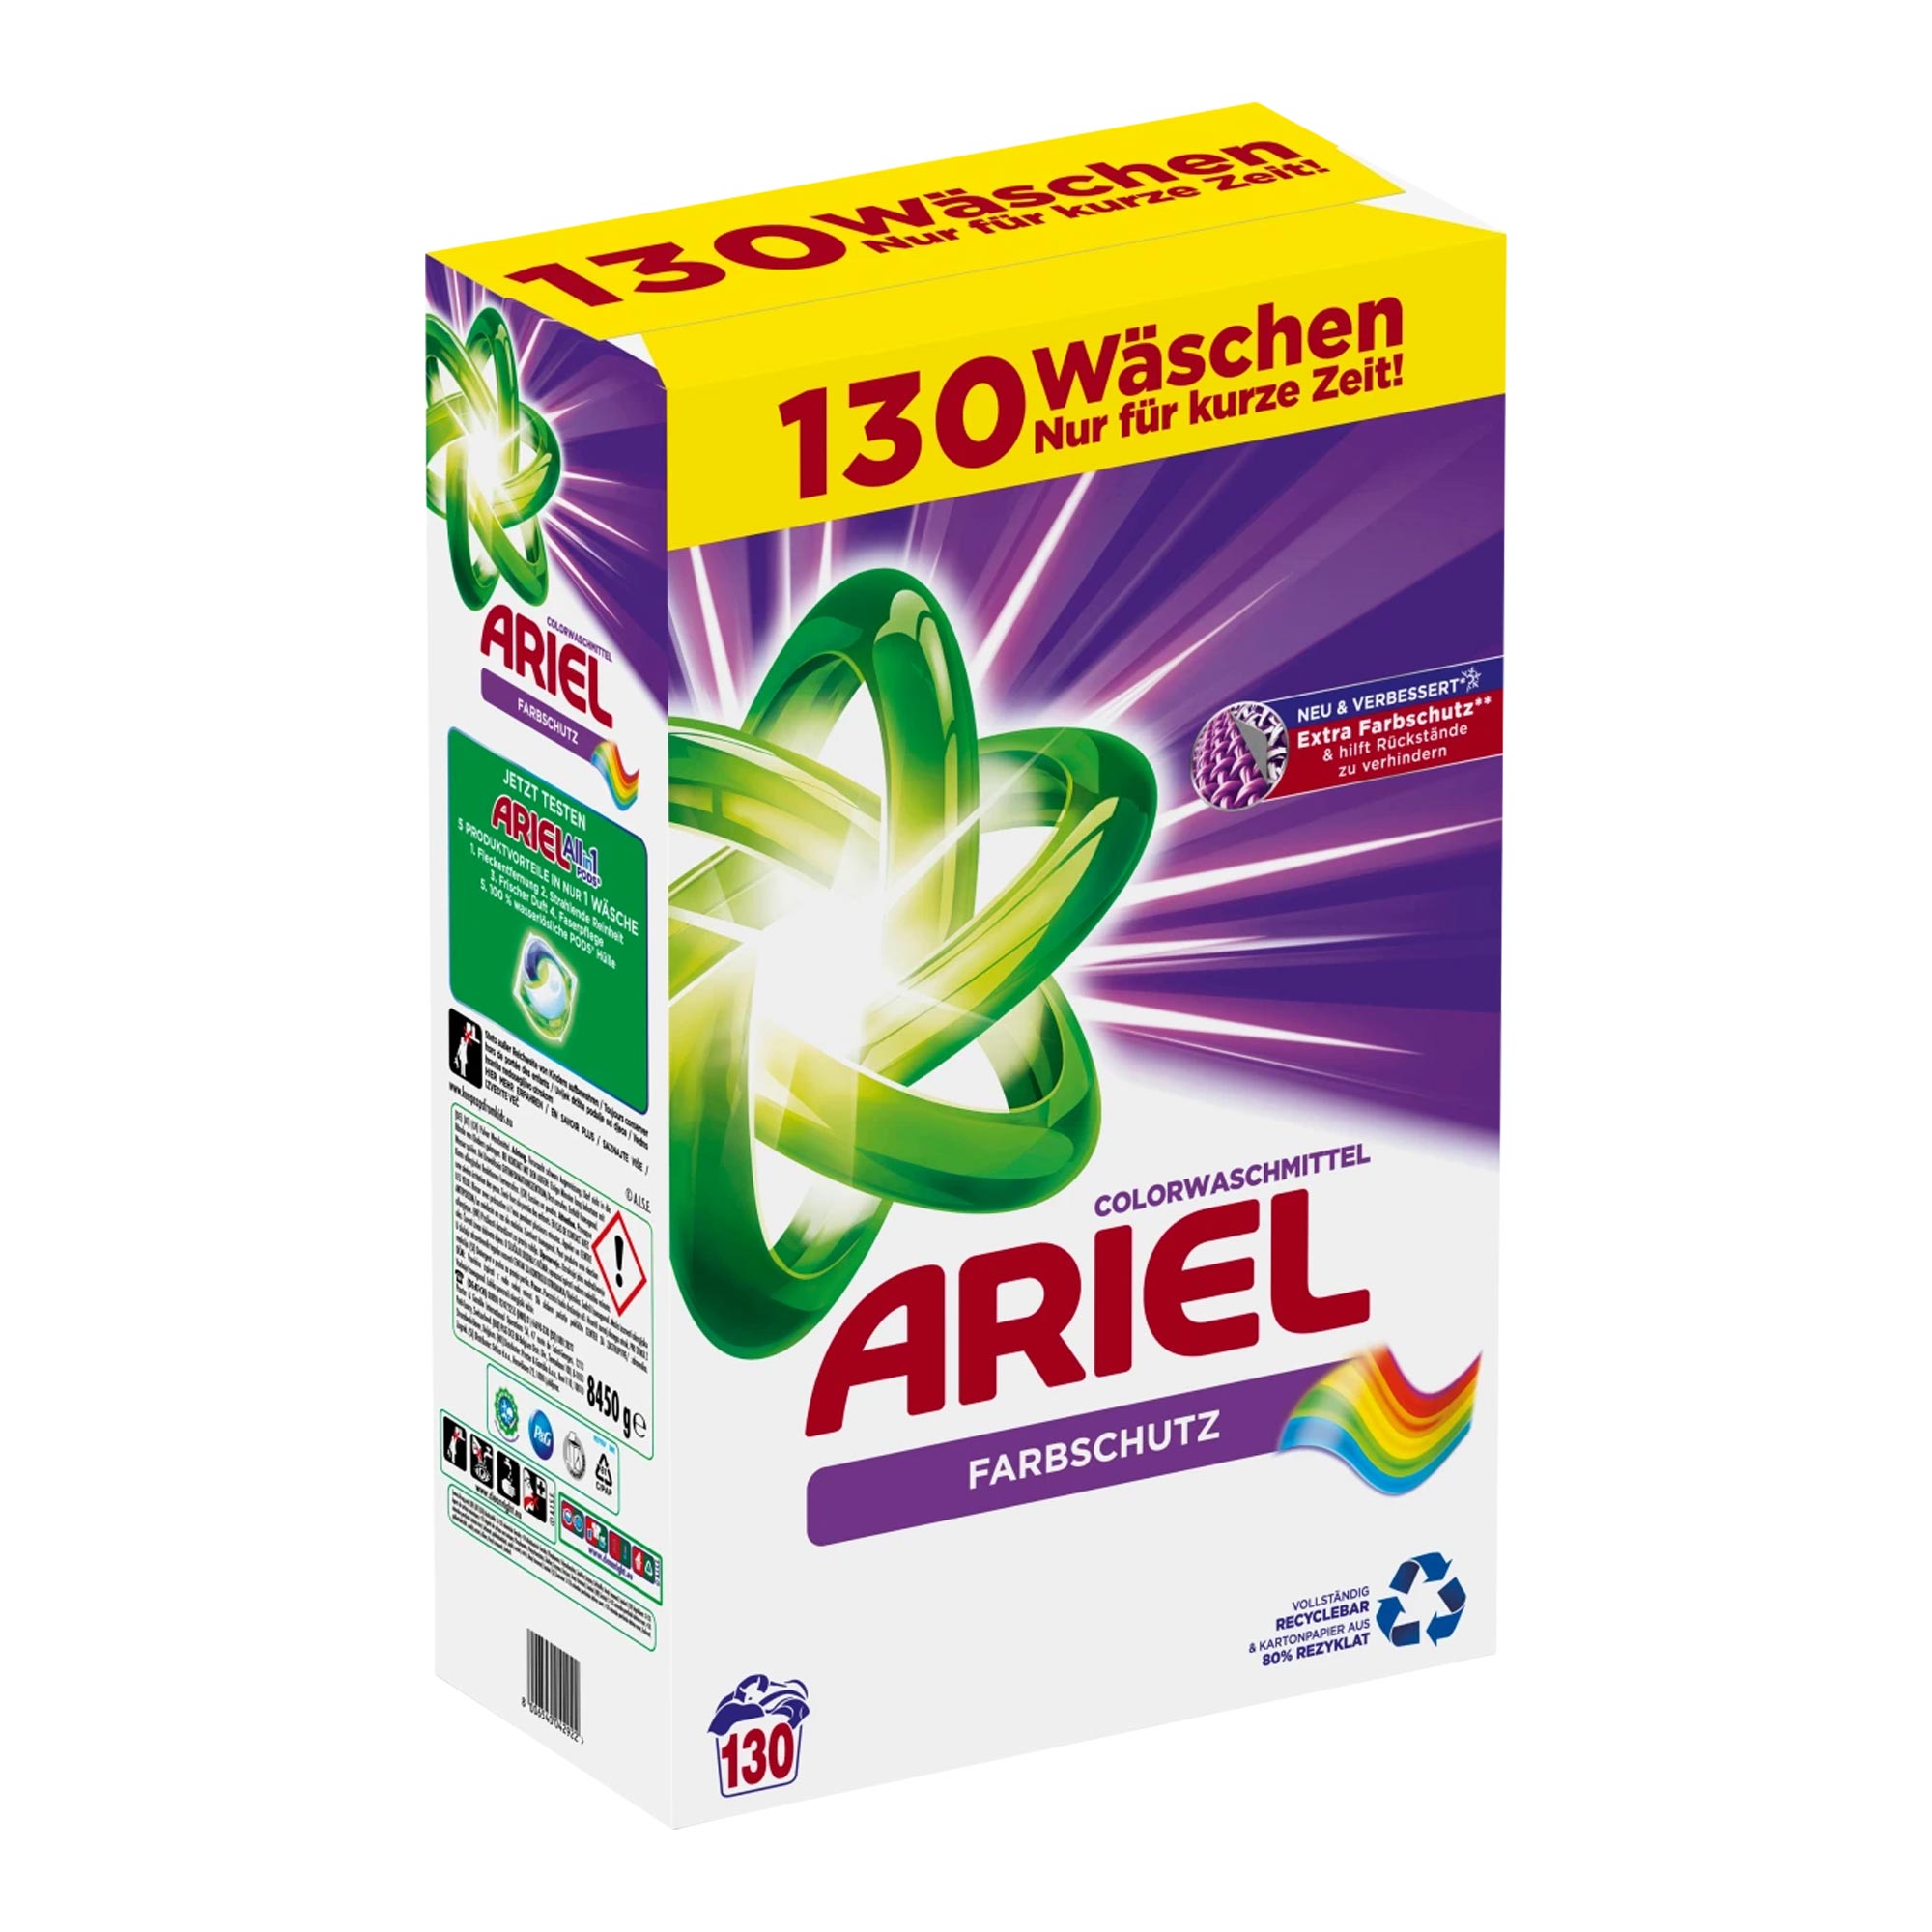 Ariel Farbschutz Colorwaschmittel Pulver, 130 Wl